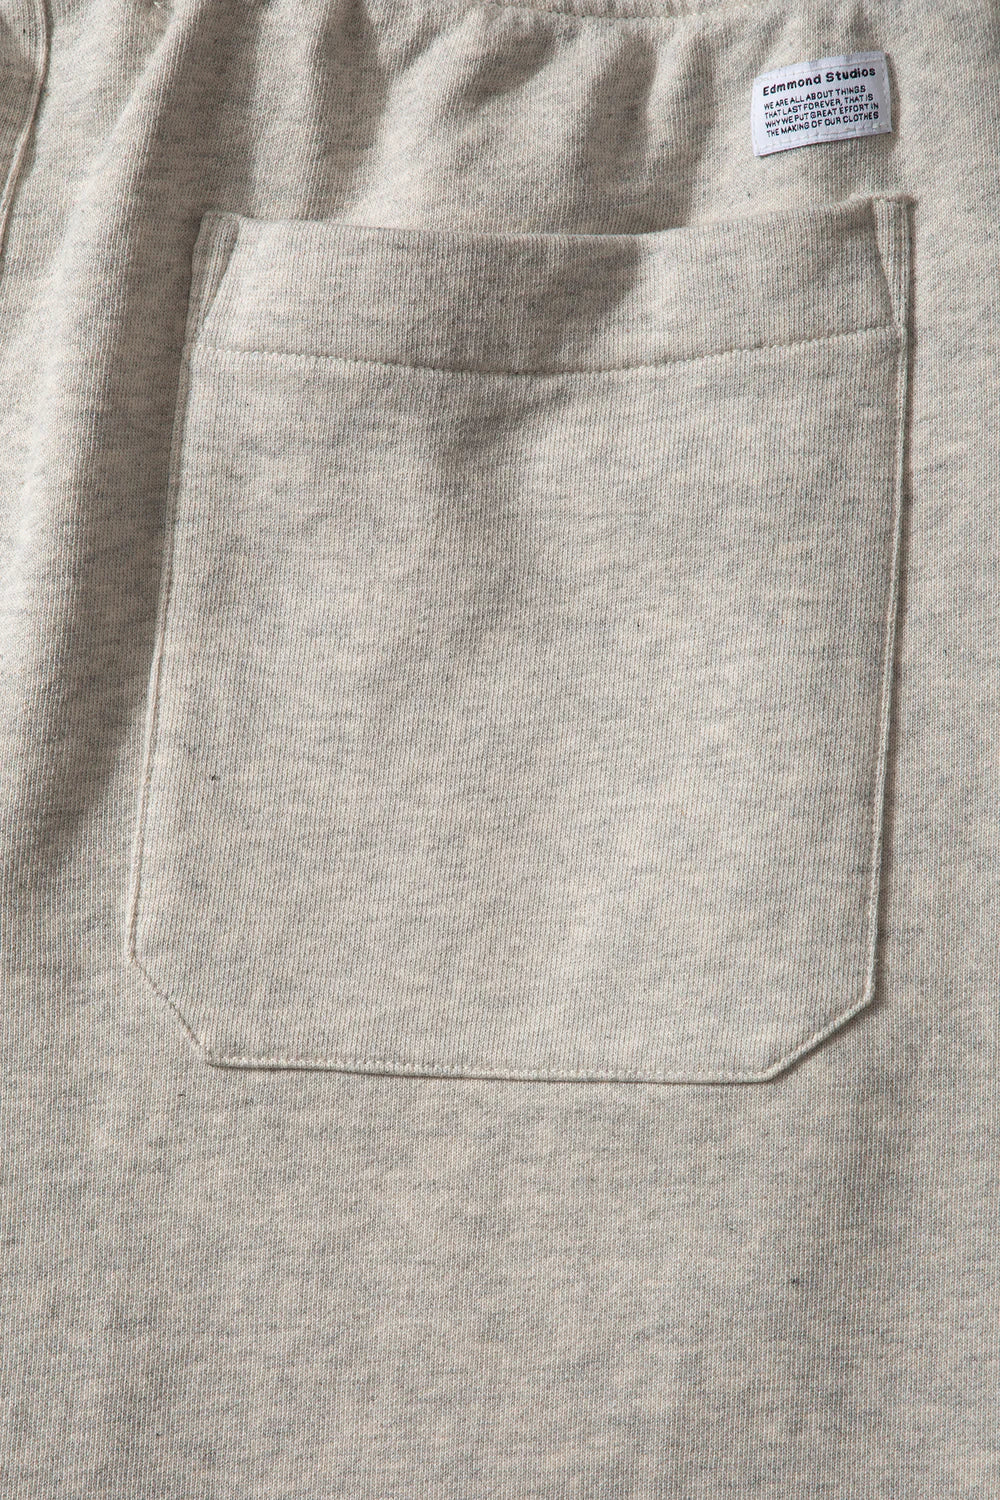 Edmmond Studios Key Sweatpants - Plain Grey